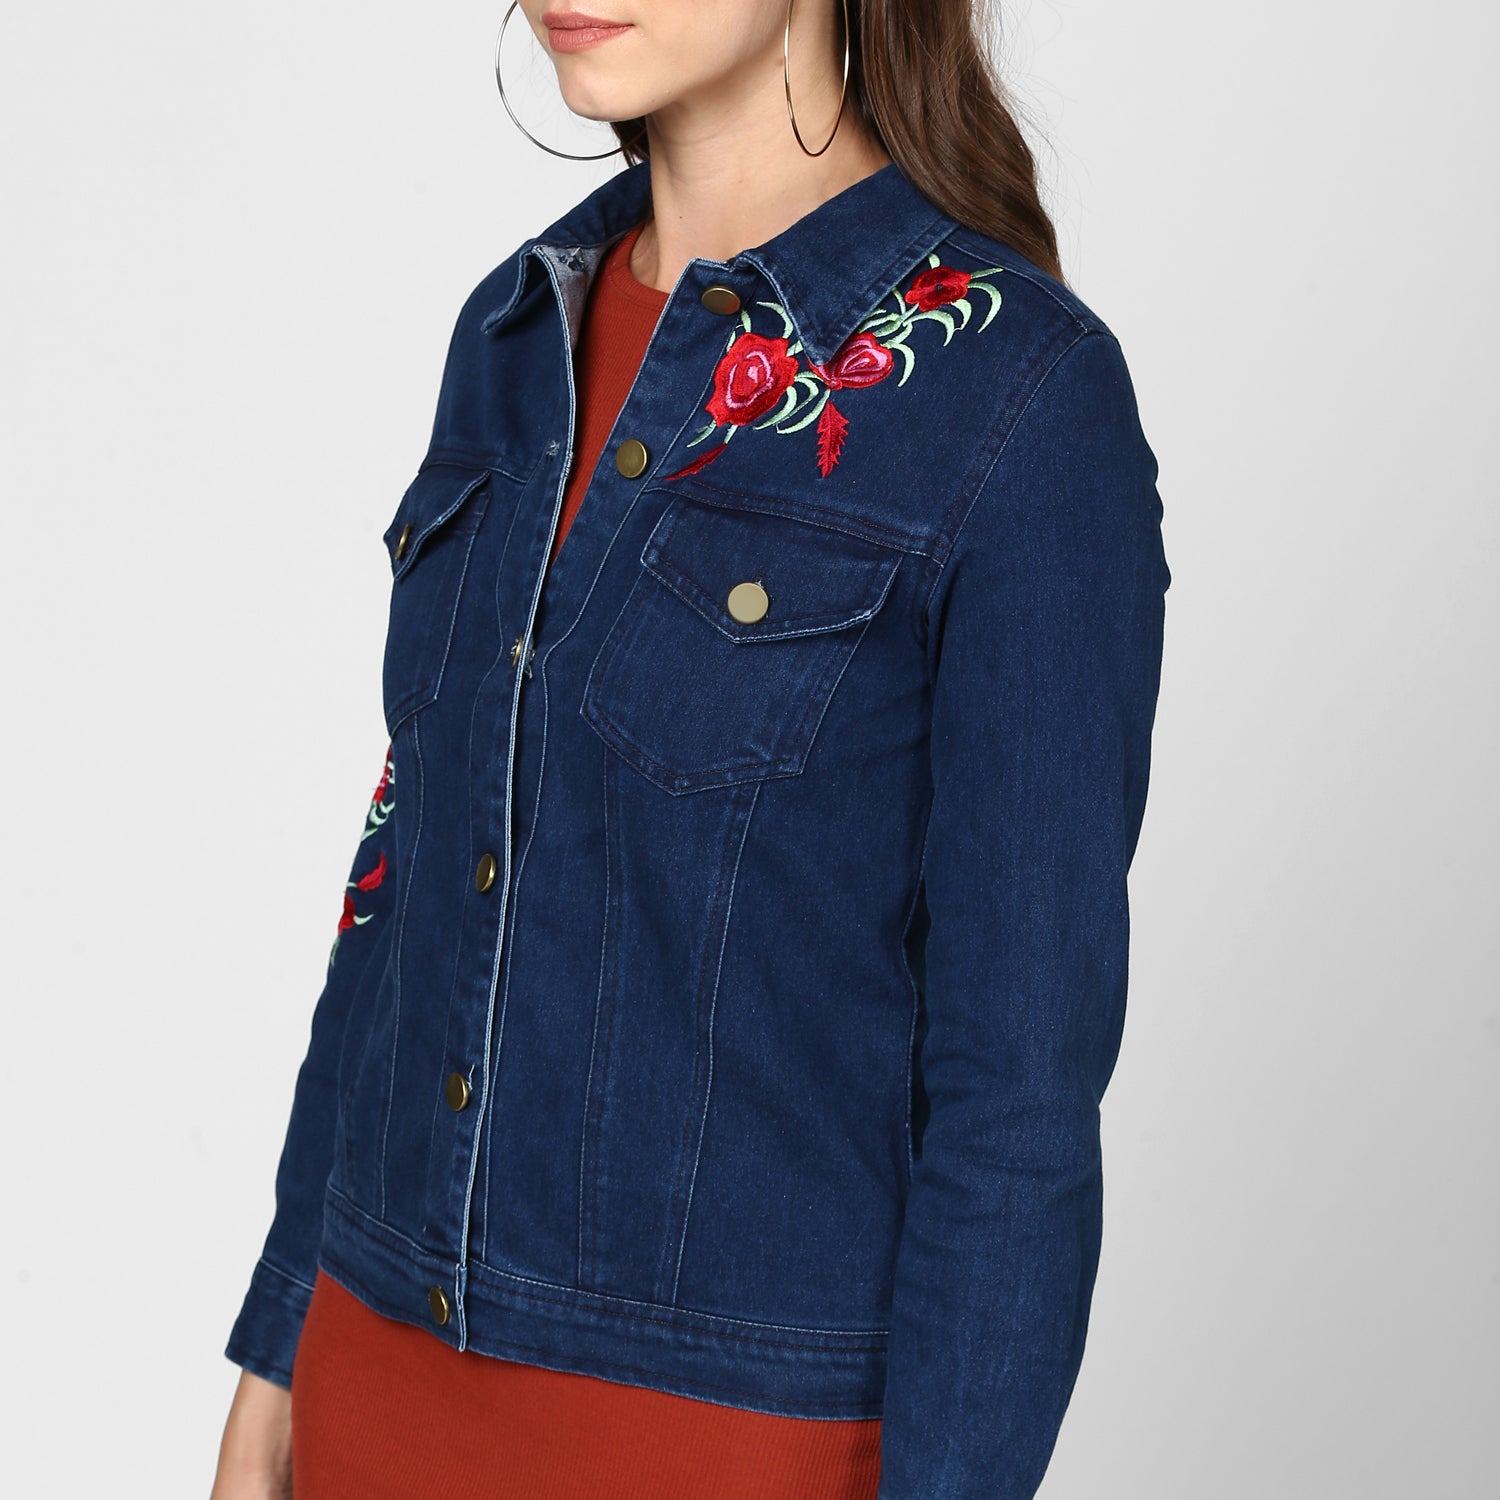 Women's Embroidered Blue Denim Jacket - StyleStone